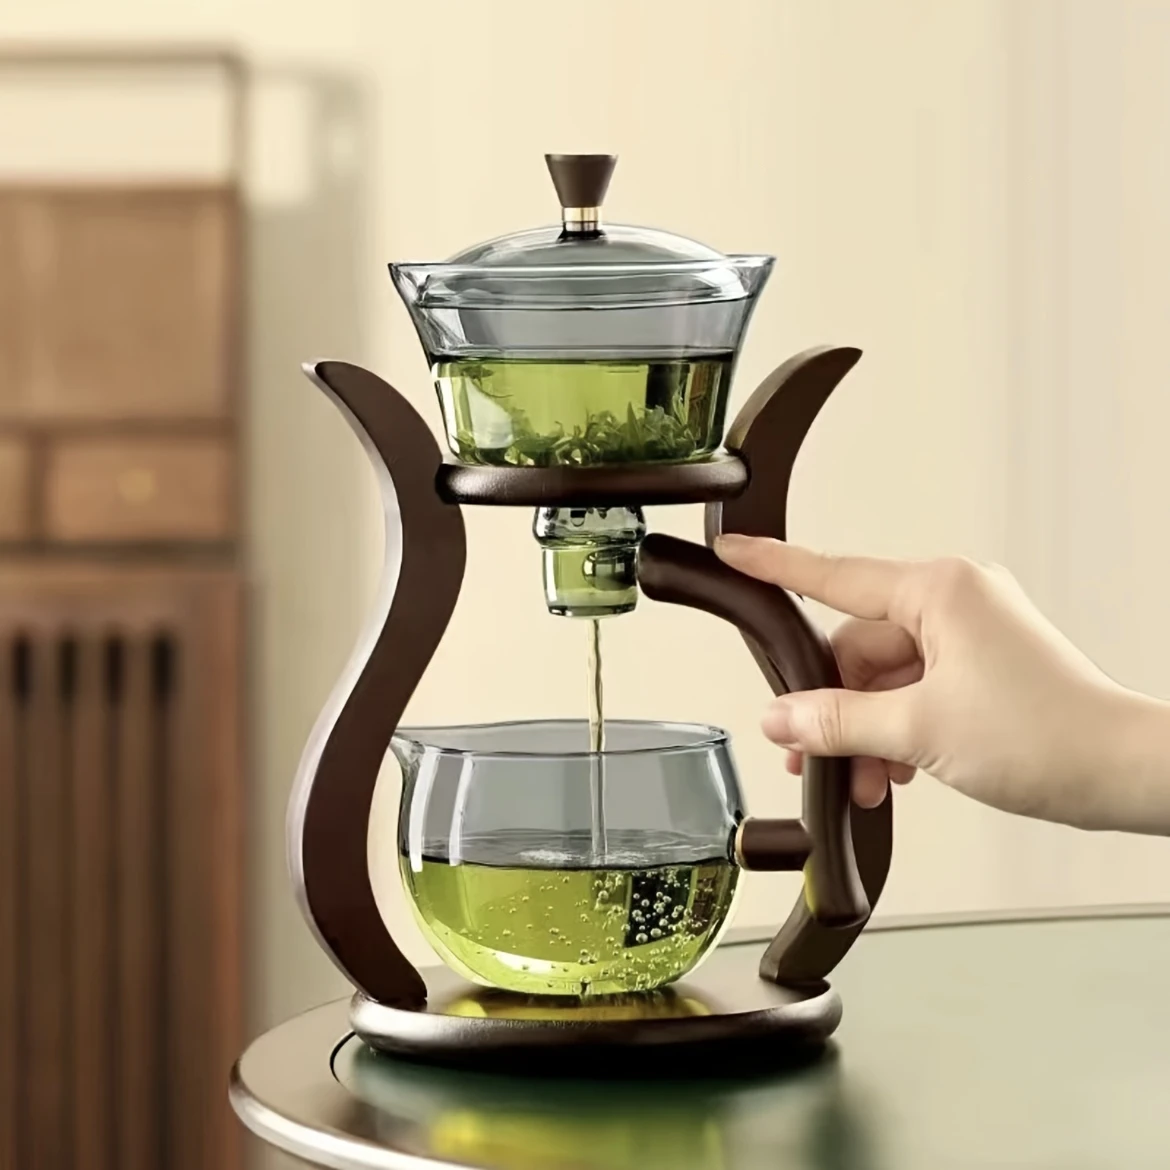 כל-בו Online למטבח סט תה זכוכית עם תה עצמאי לנוחות מקסימלית